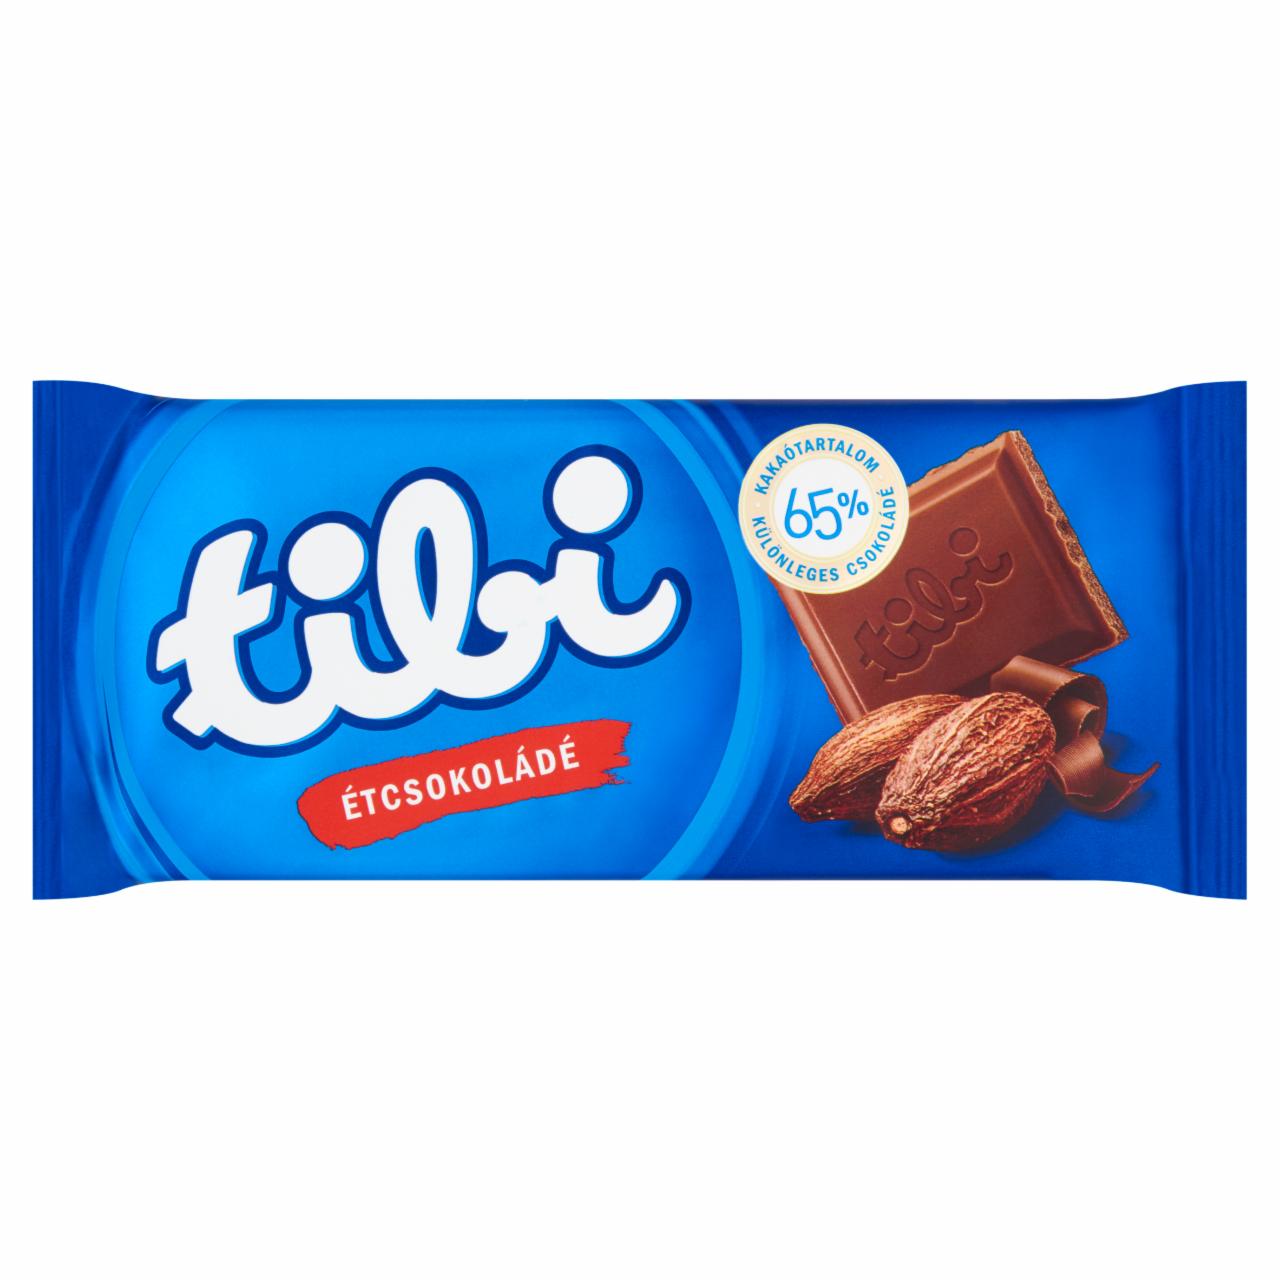 Képek - Tibi különleges étcsokoládé 90 g